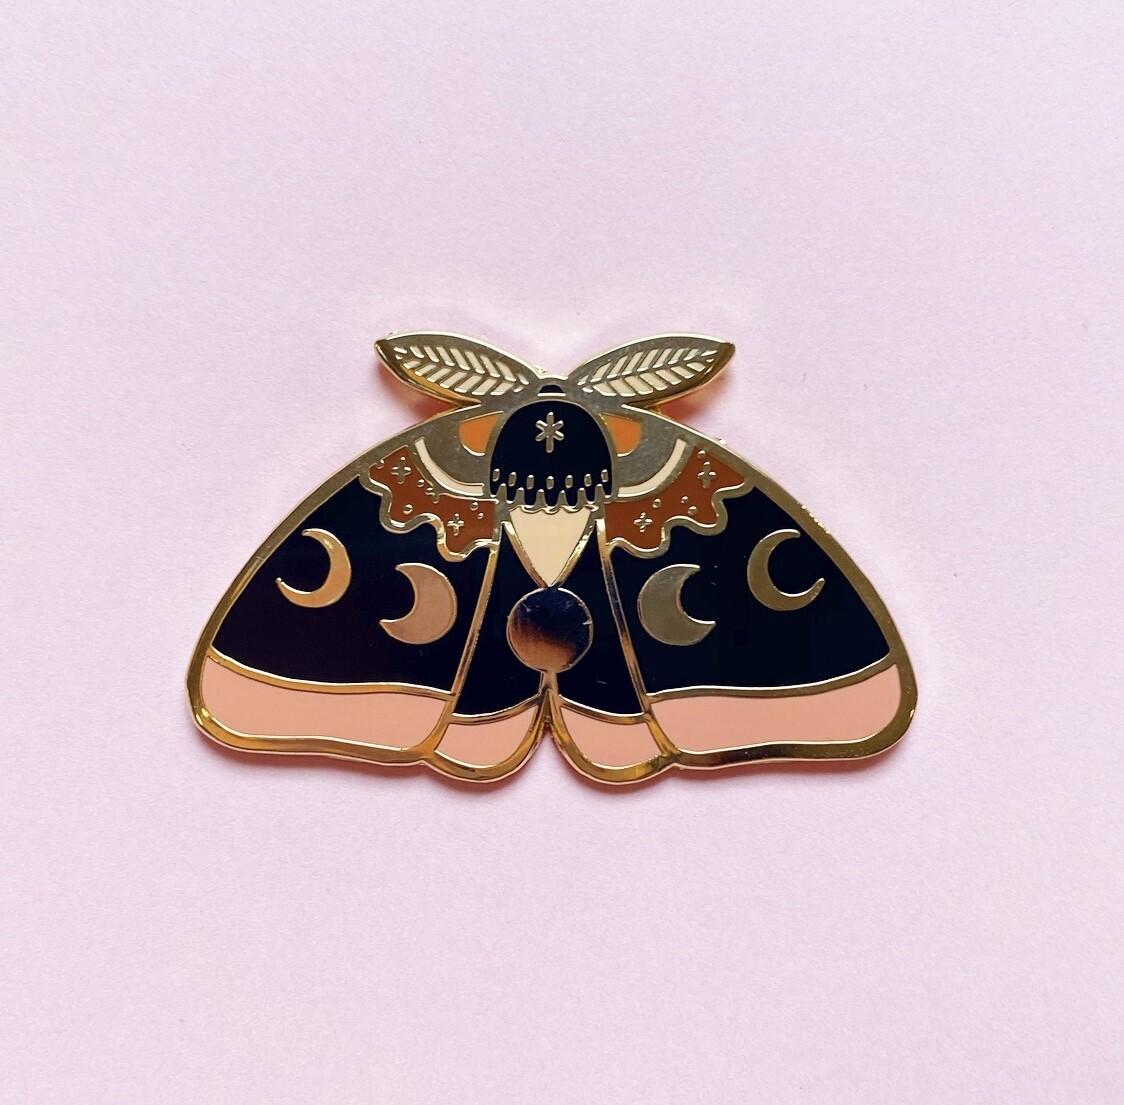 Sunset Moth pin